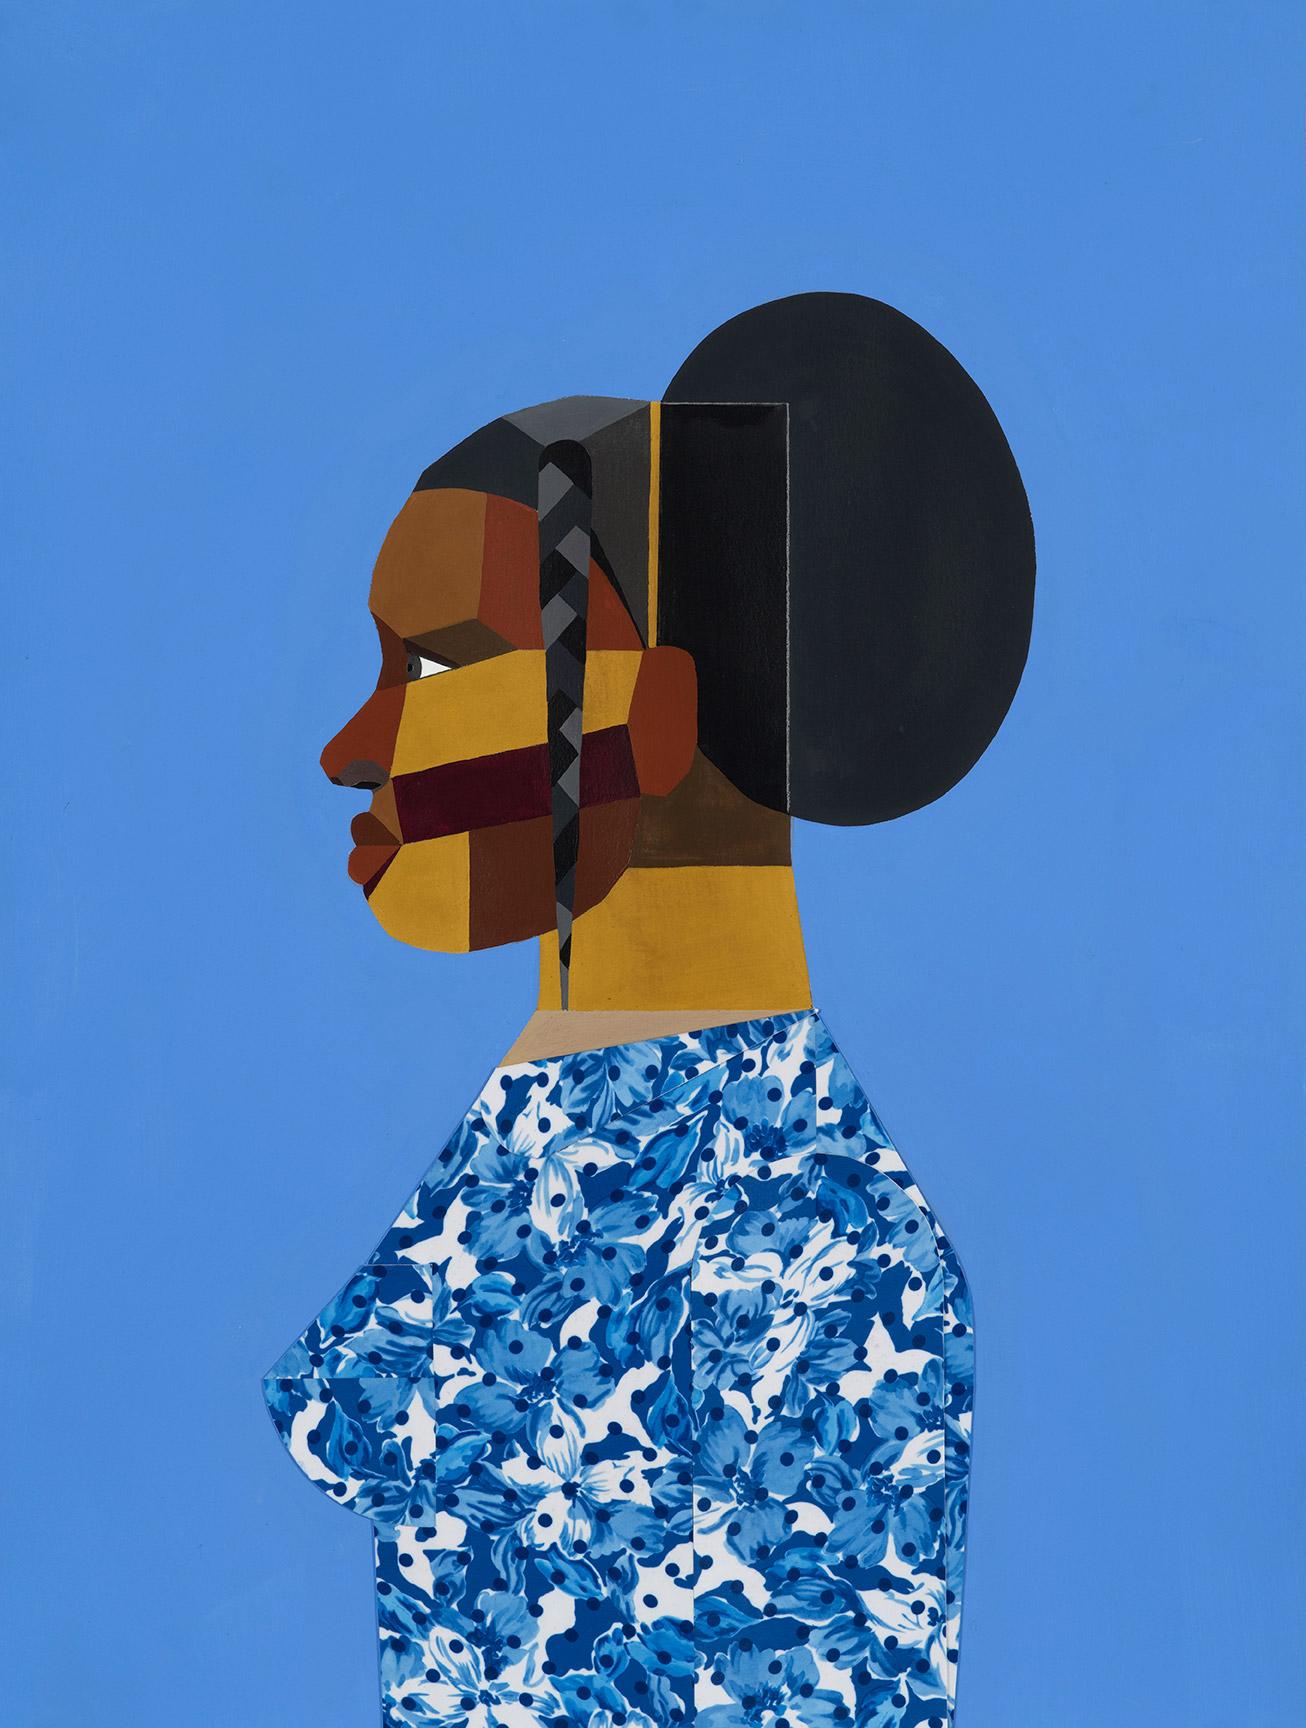 艺术家derrickadams新展作品一组色彩鲜明的拼贴肖像画